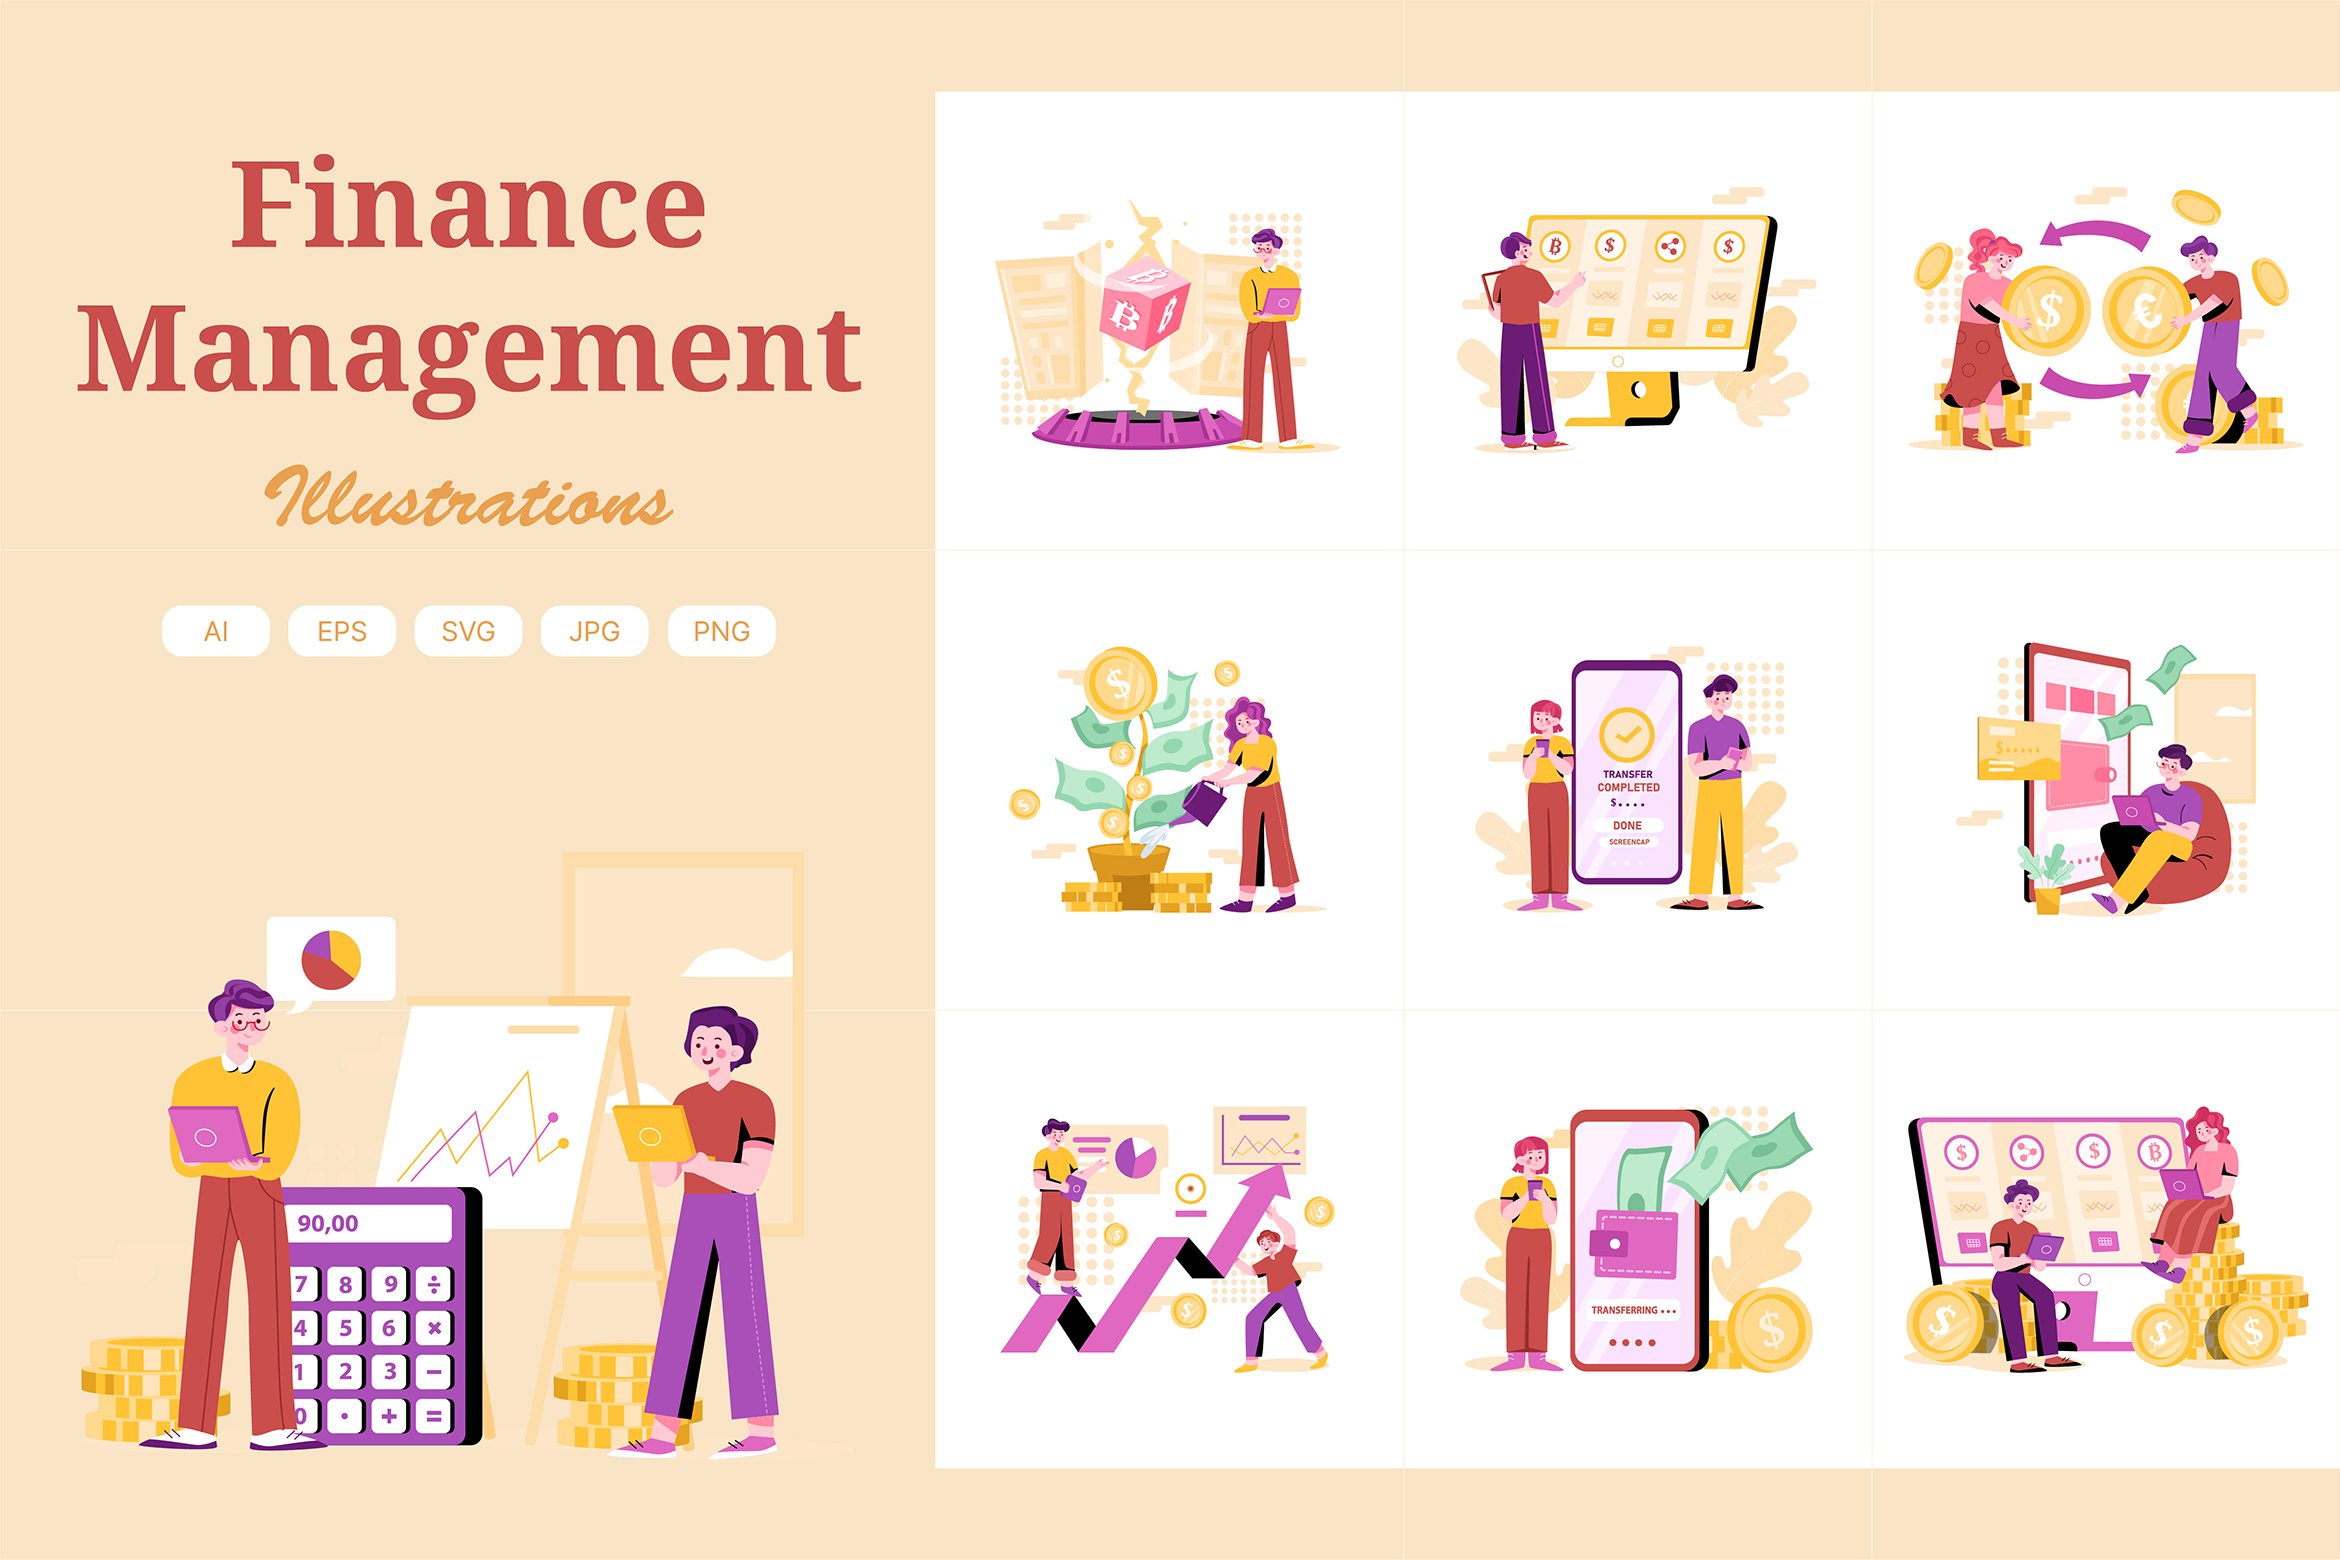 M334_Finance Management Illustration cover image.